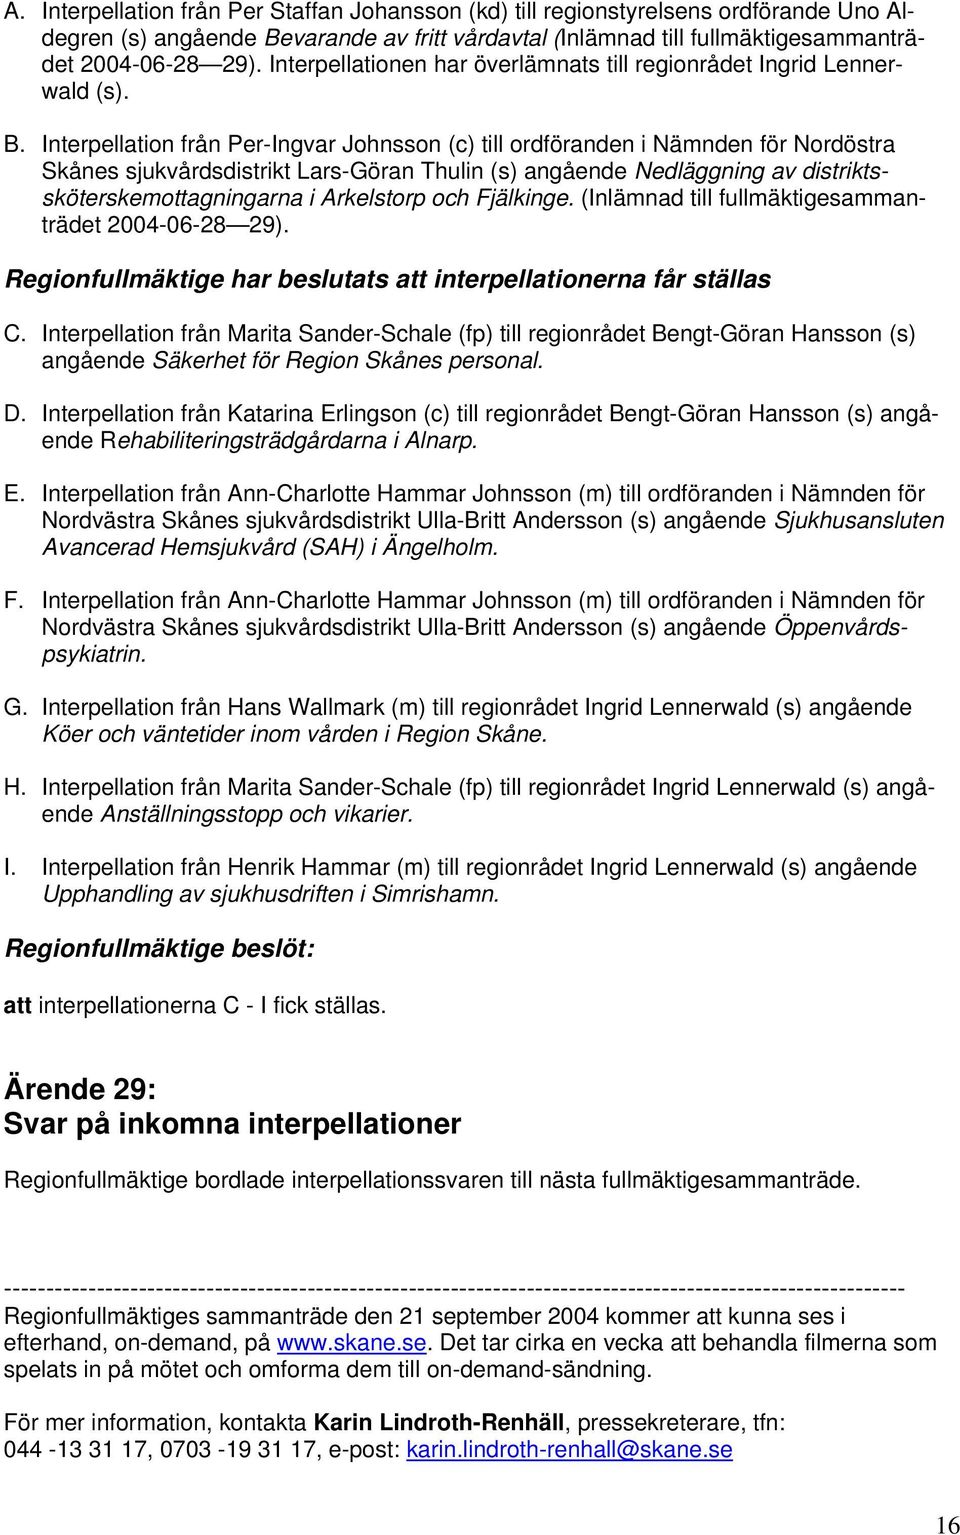 Interpellation från Per-Ingvar Johnsson (c) till ordföranden i Nämnden för Nordöstra Skånes sjukvårdsdistrikt Lars-Göran Thulin (s) angående Nedläggning av distriktssköterskemottagningarna i